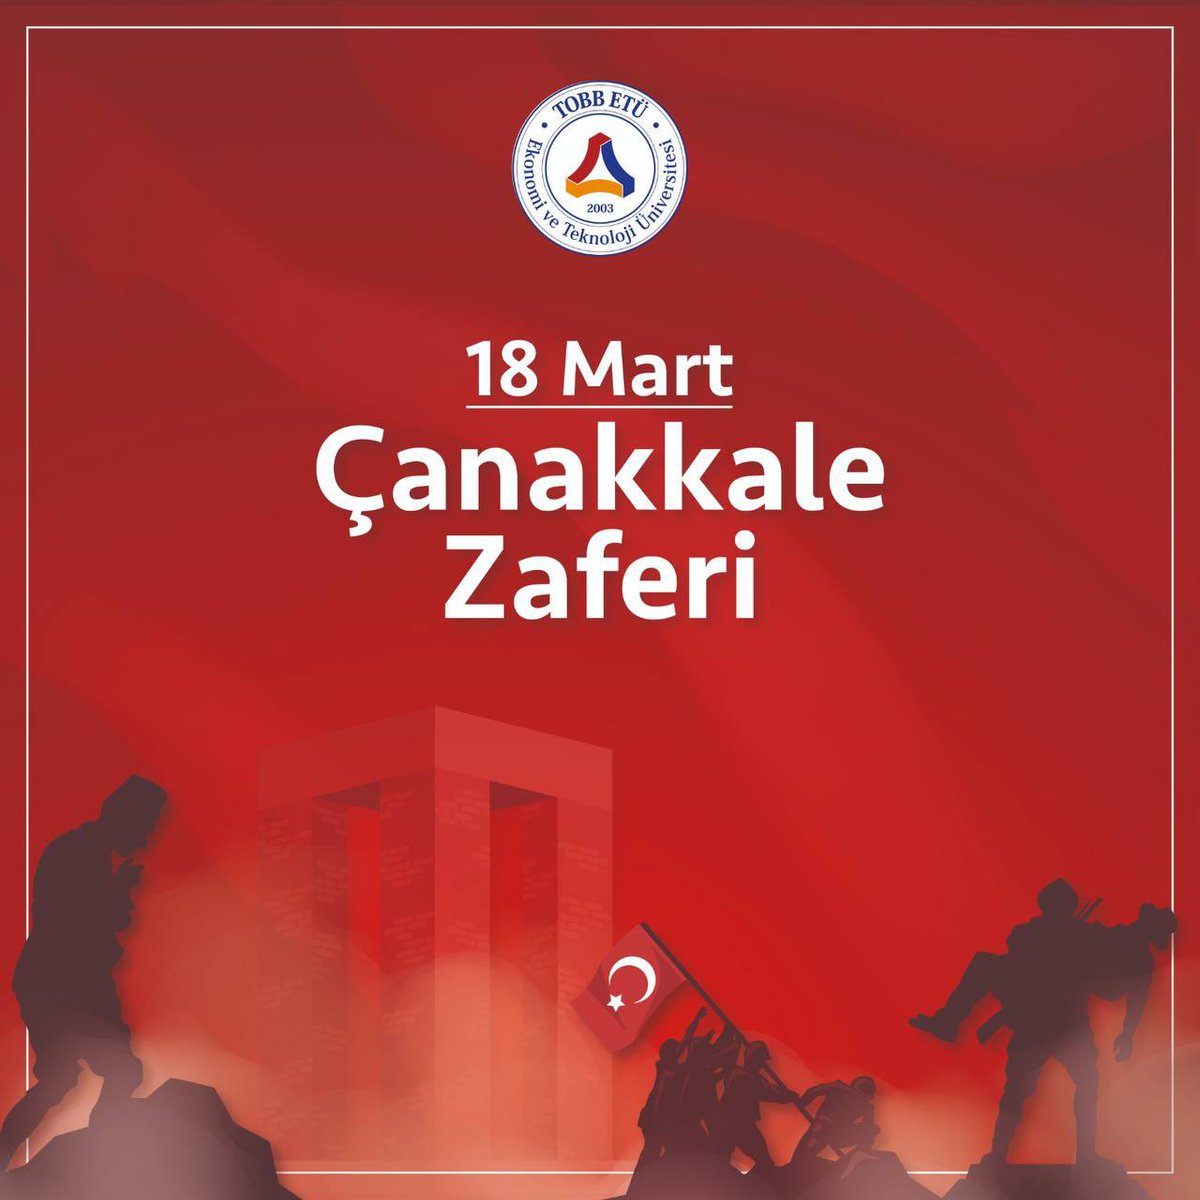 18 Mart Çanakkale Zaferi, Türk milletinin bağımsızlık ve özgürlük mücadelesinin en önemli kilometre taşlarından biridir. Şehitlerimizi rahmet ve minnetle anıyor, bu toprakları bizlere vatan kılma uğrunda canlarını feda eden tüm kahramanları saygıyla selamlıyoruz. #18Mart